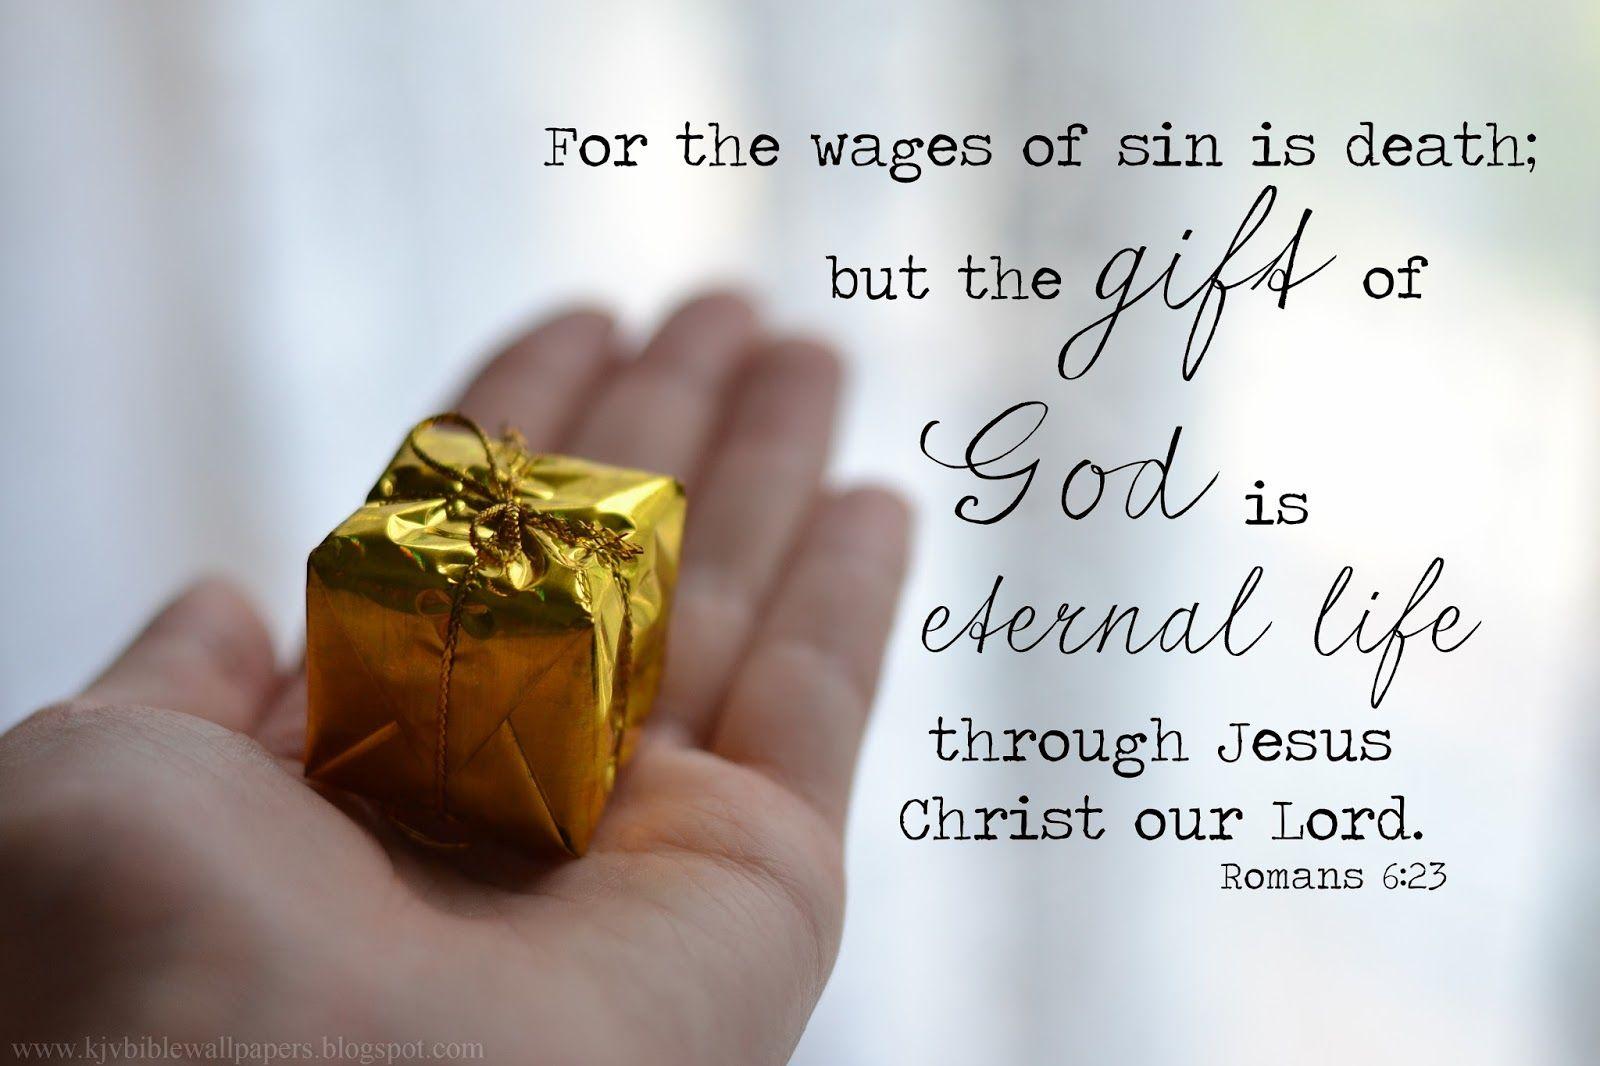 KJV Bible Wallpaper: The Gift of God 6:23